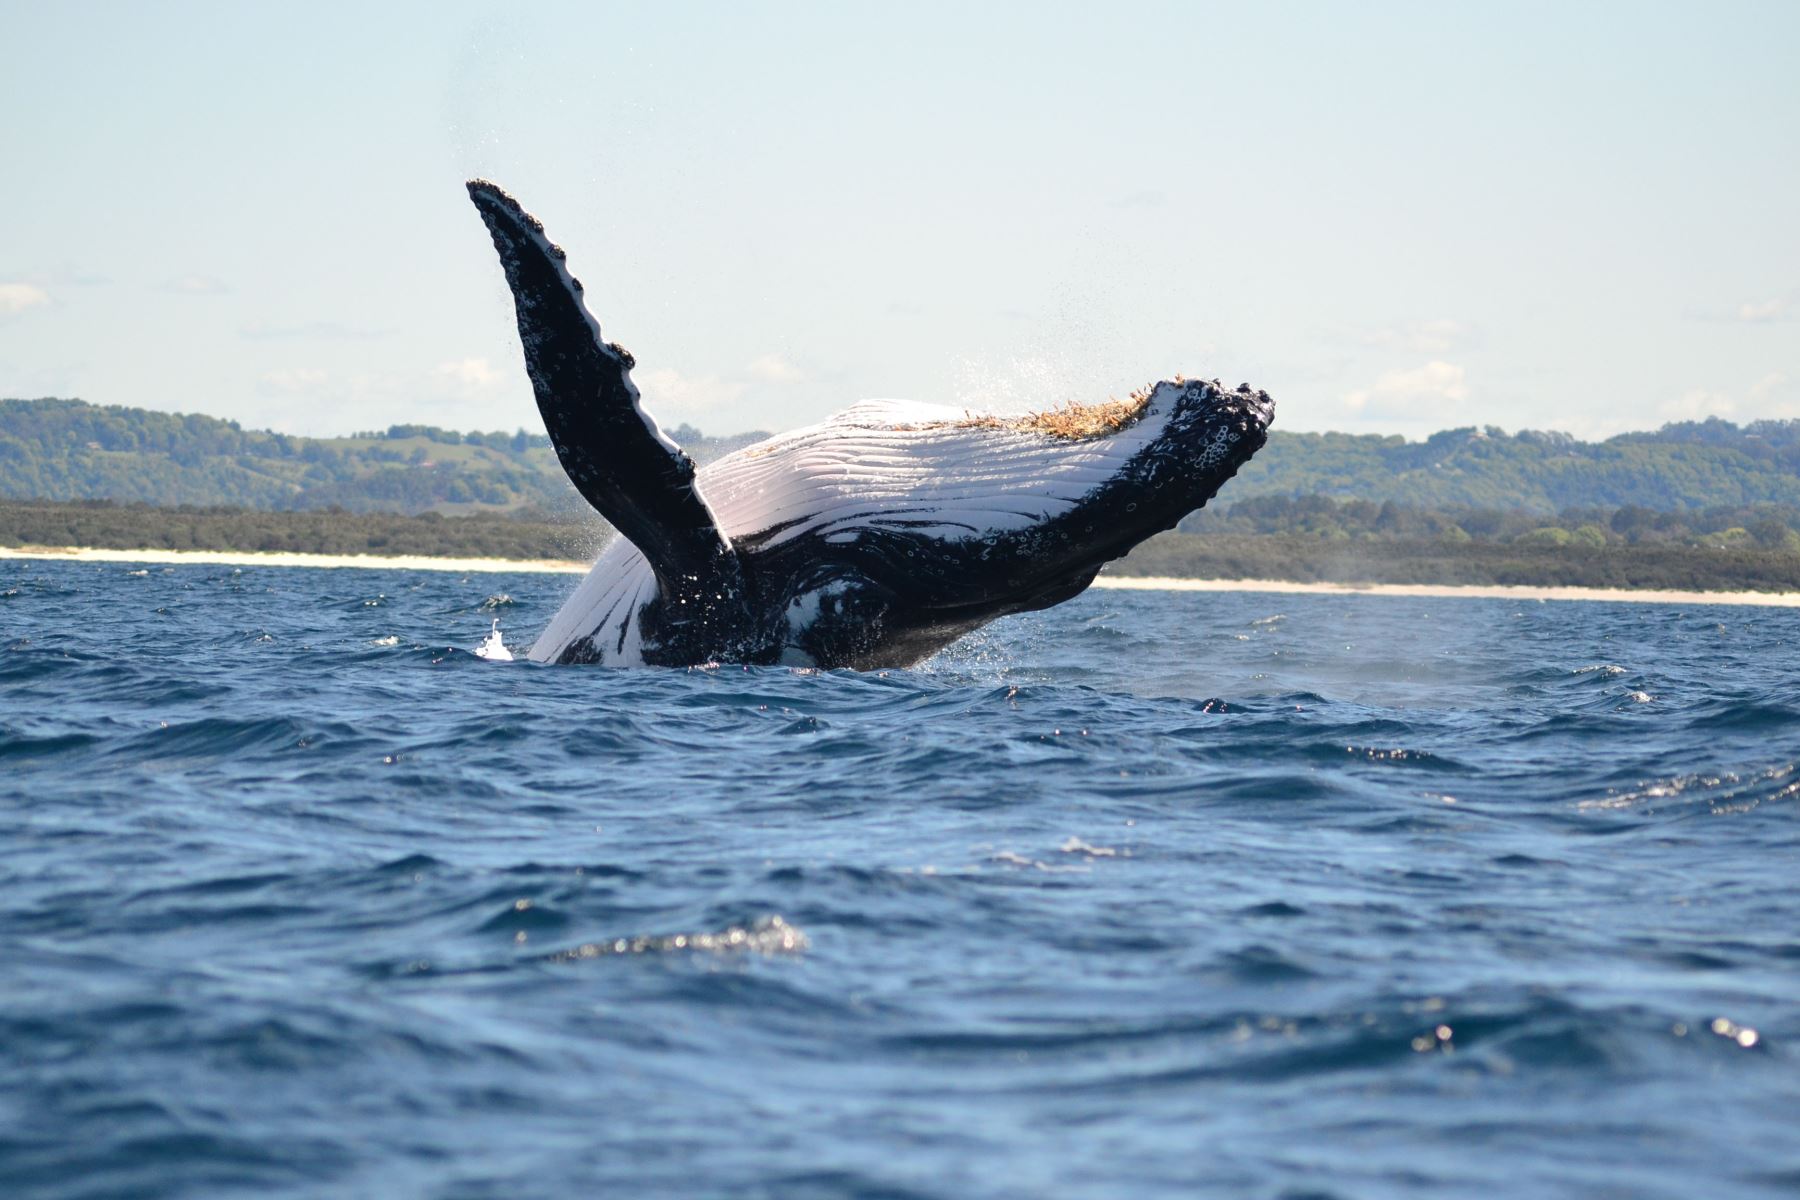 El avistamiento de ballenas es uno de los espectáculos de la naturaleza más impresionantes y memorables que pueden experimentarse. Y la costa norte el Perú es uno de los mejores lugares del mundo para apreciar el tránsito, con acrobáticos movimientos, de estos gigantes cetáceos por el mar de Grau, en una temporada que culmina a fines de octubre. ANDINA/Difusión